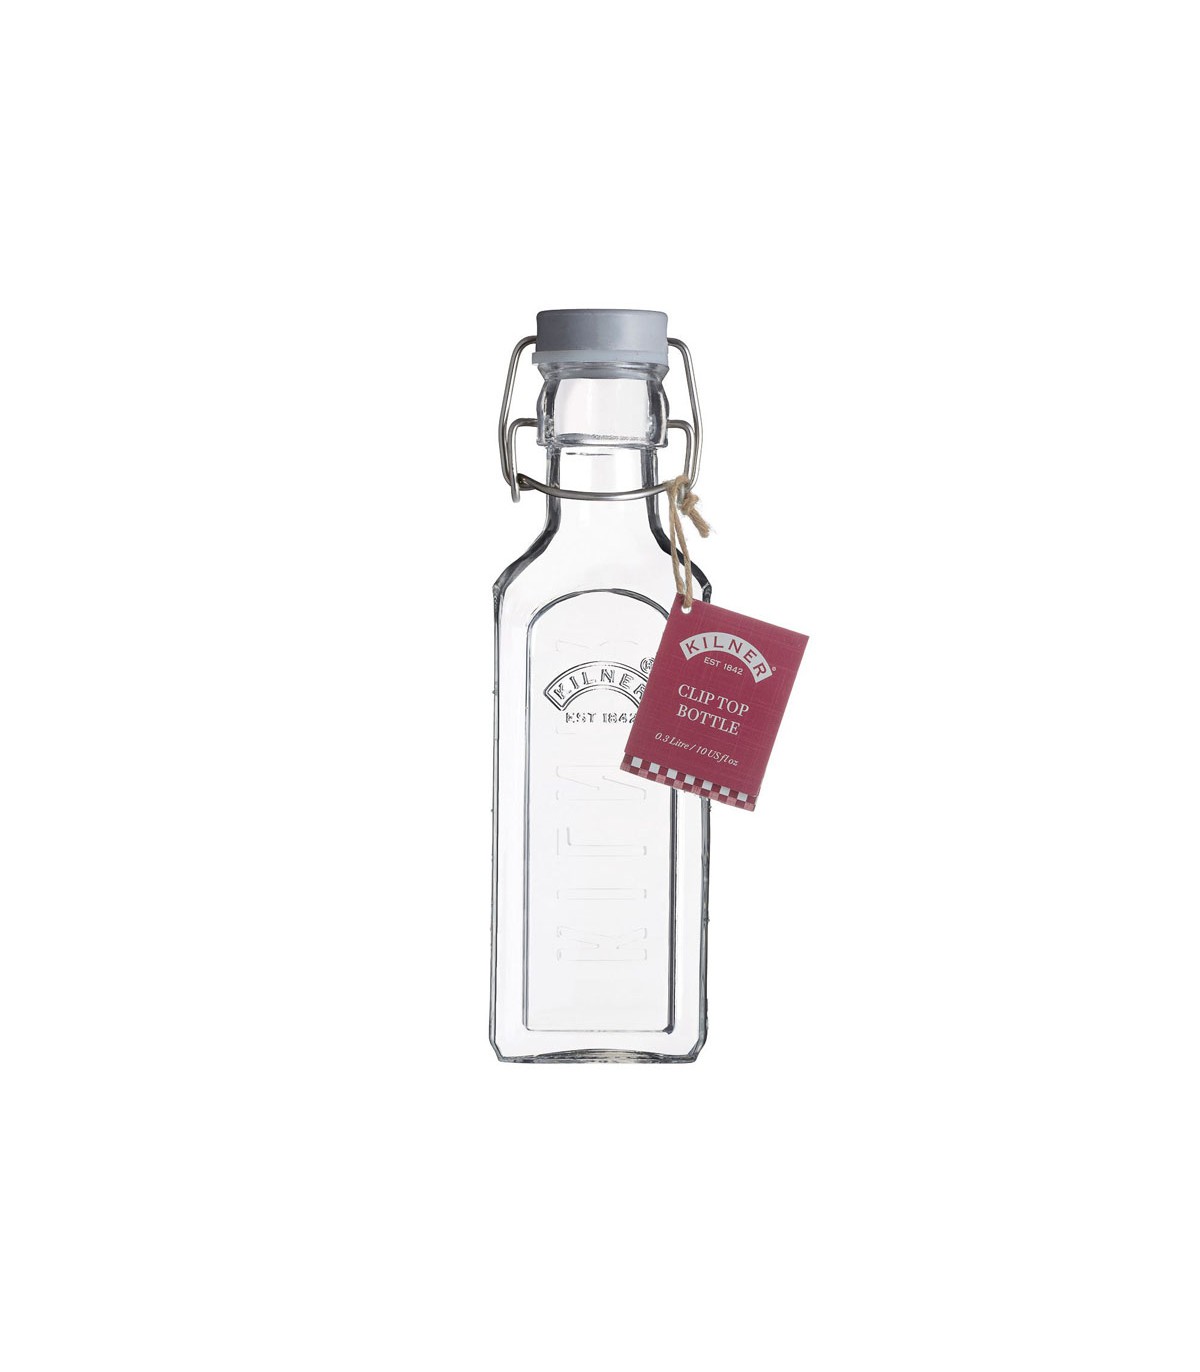 Botella cuadrada con cierre hermético 1 litro - Cristal - Kilner